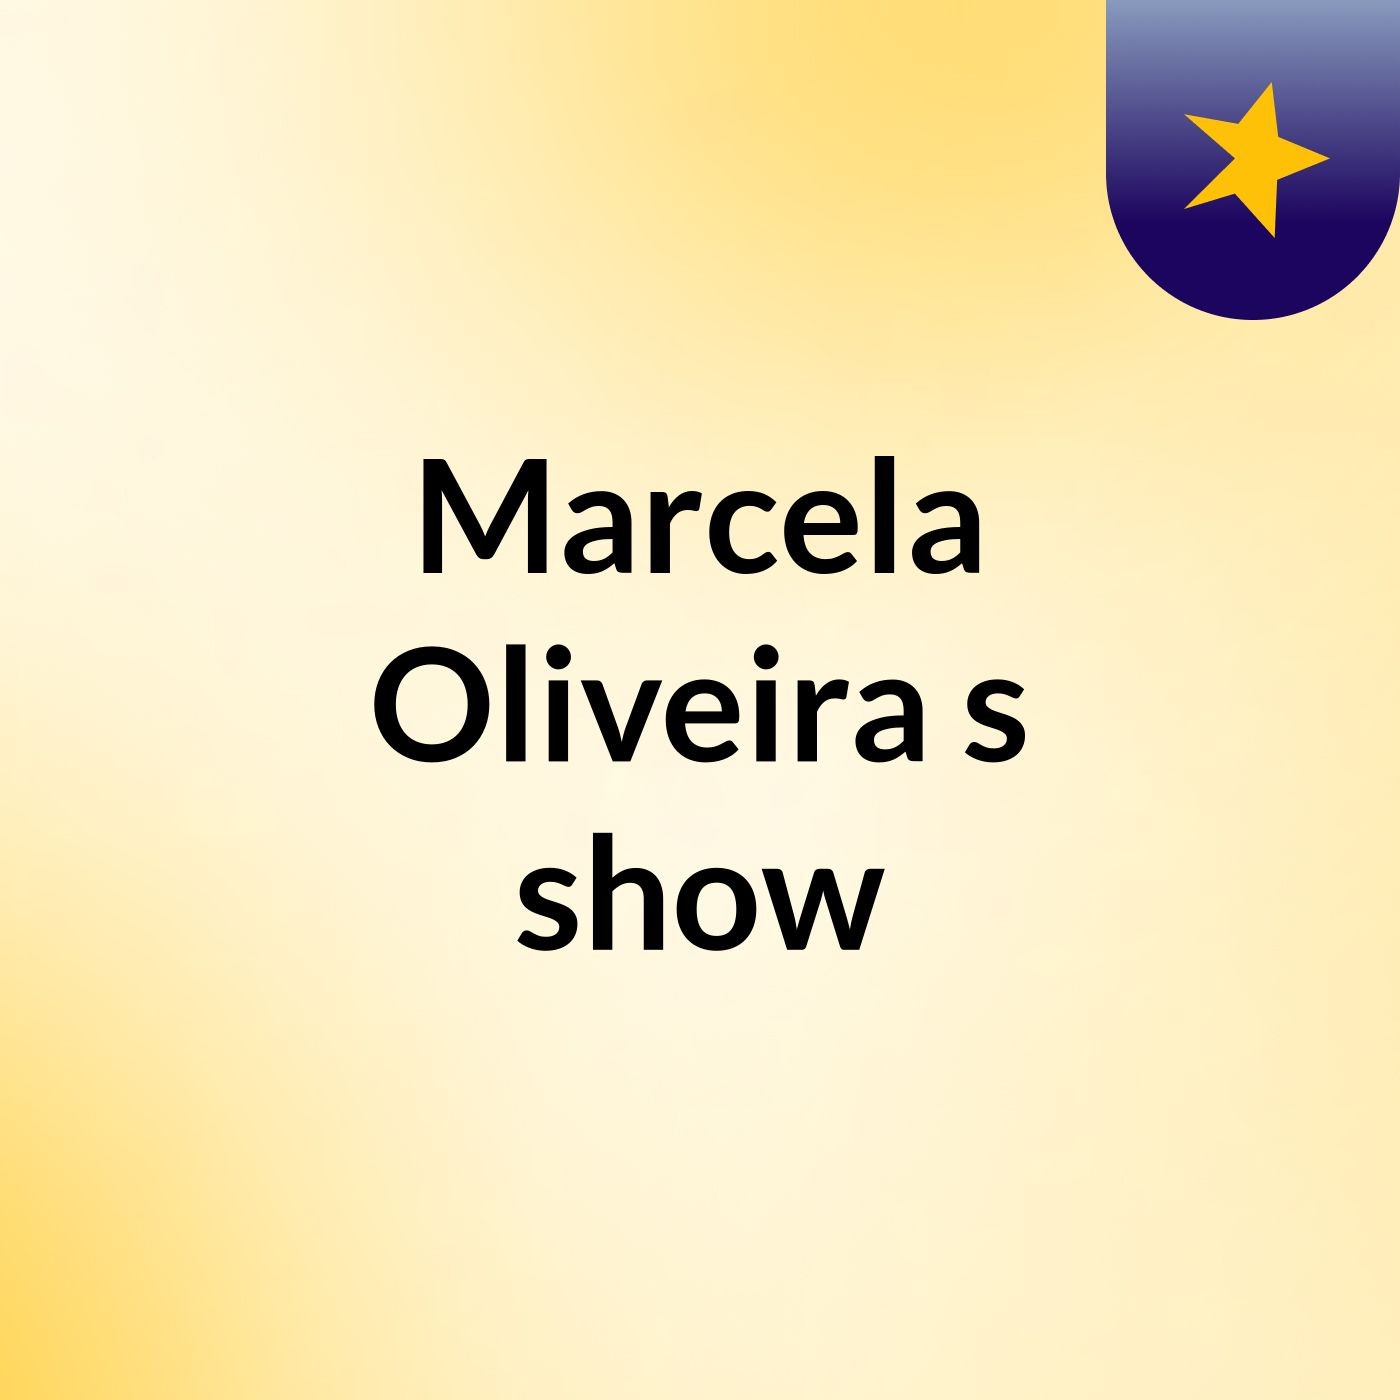 Marcela Oliveira's show